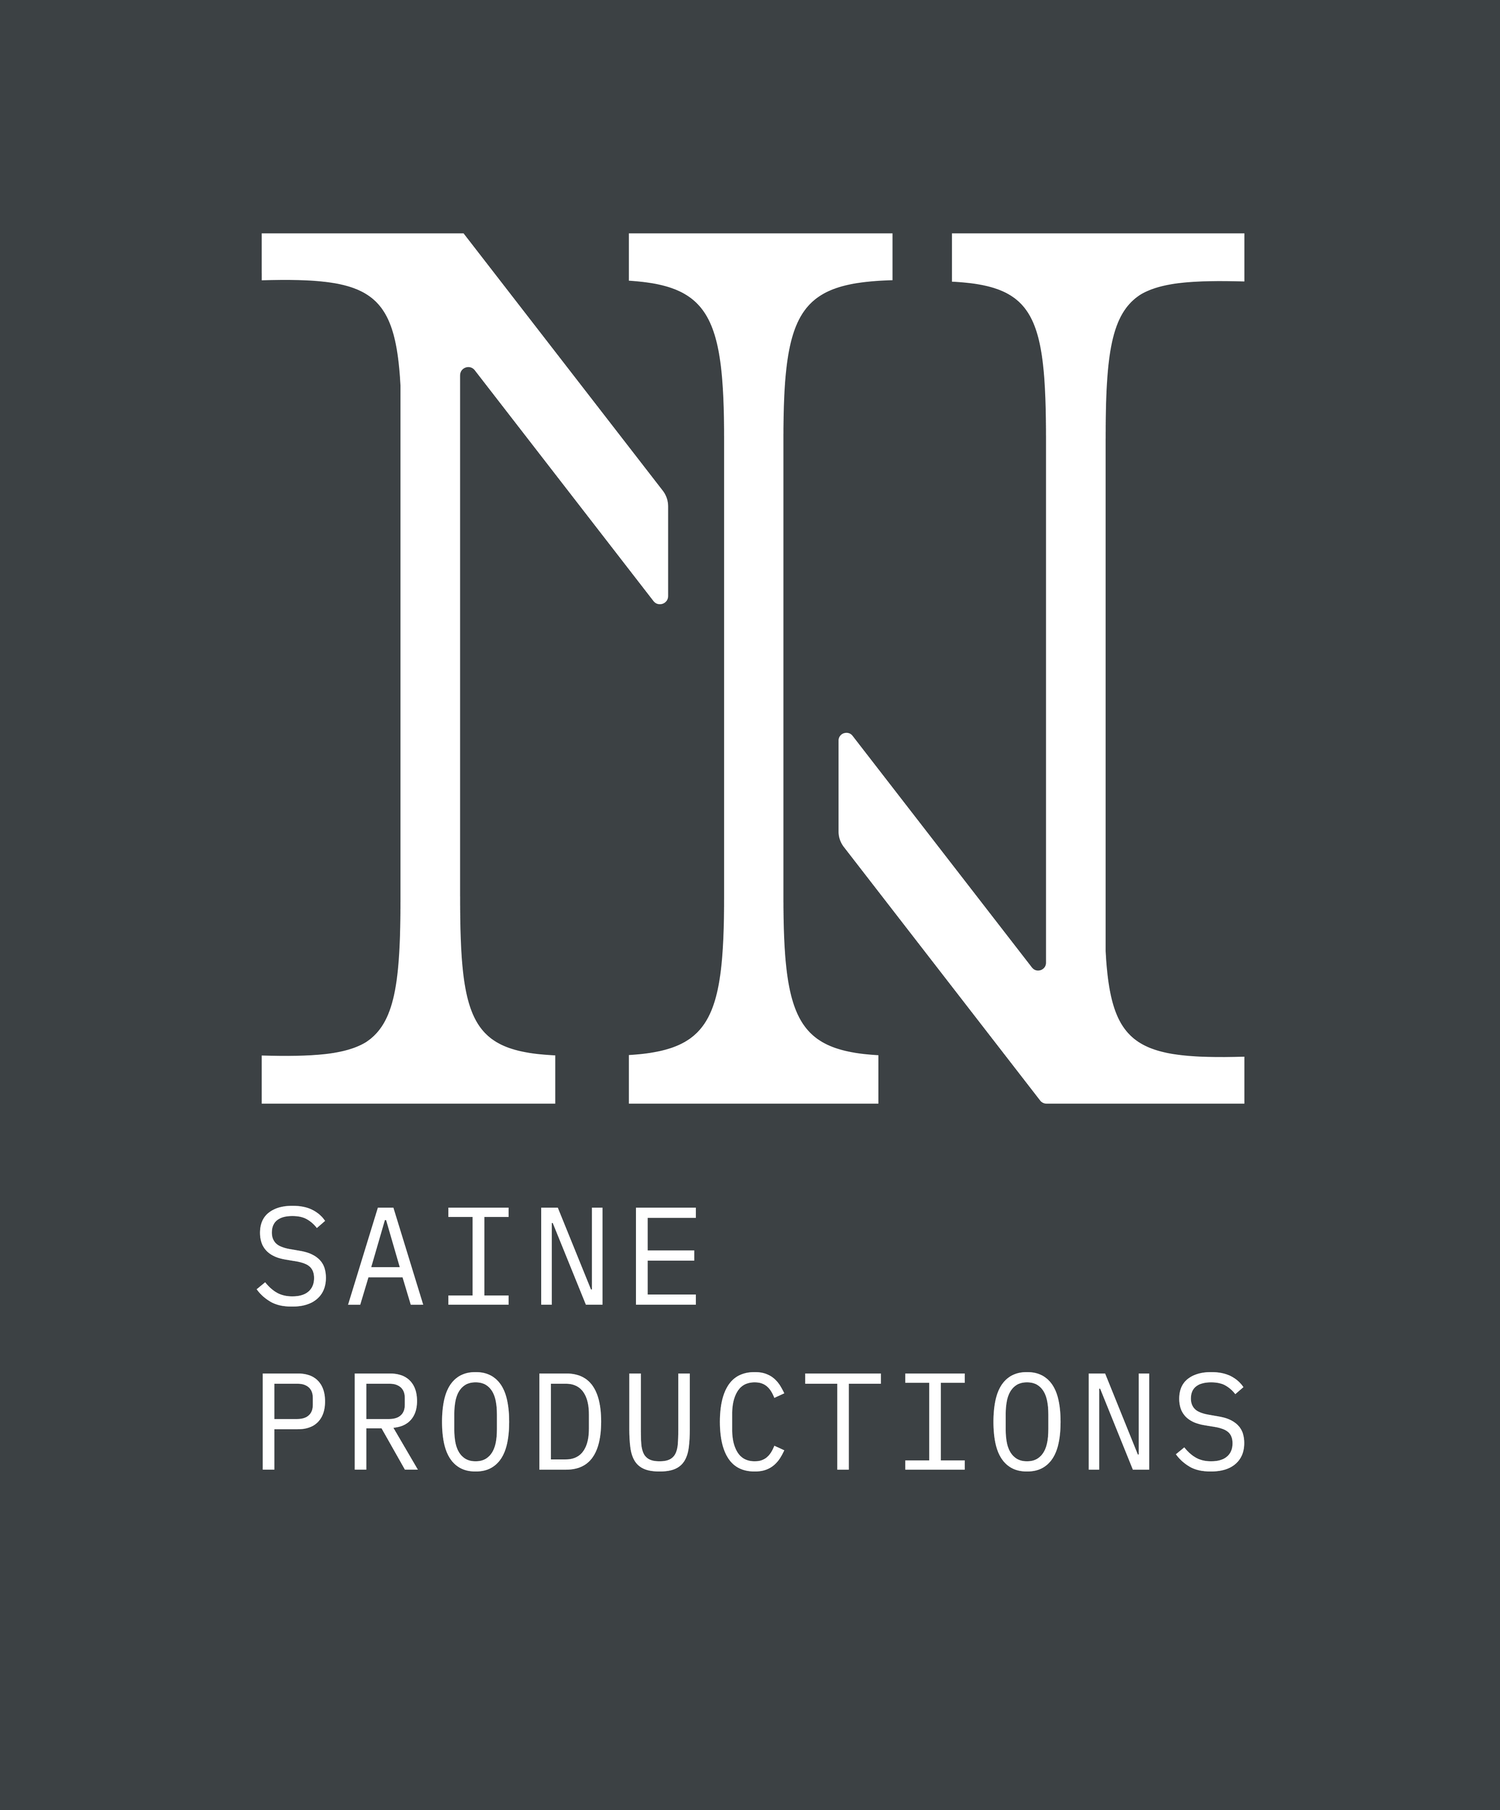 Saine Productions